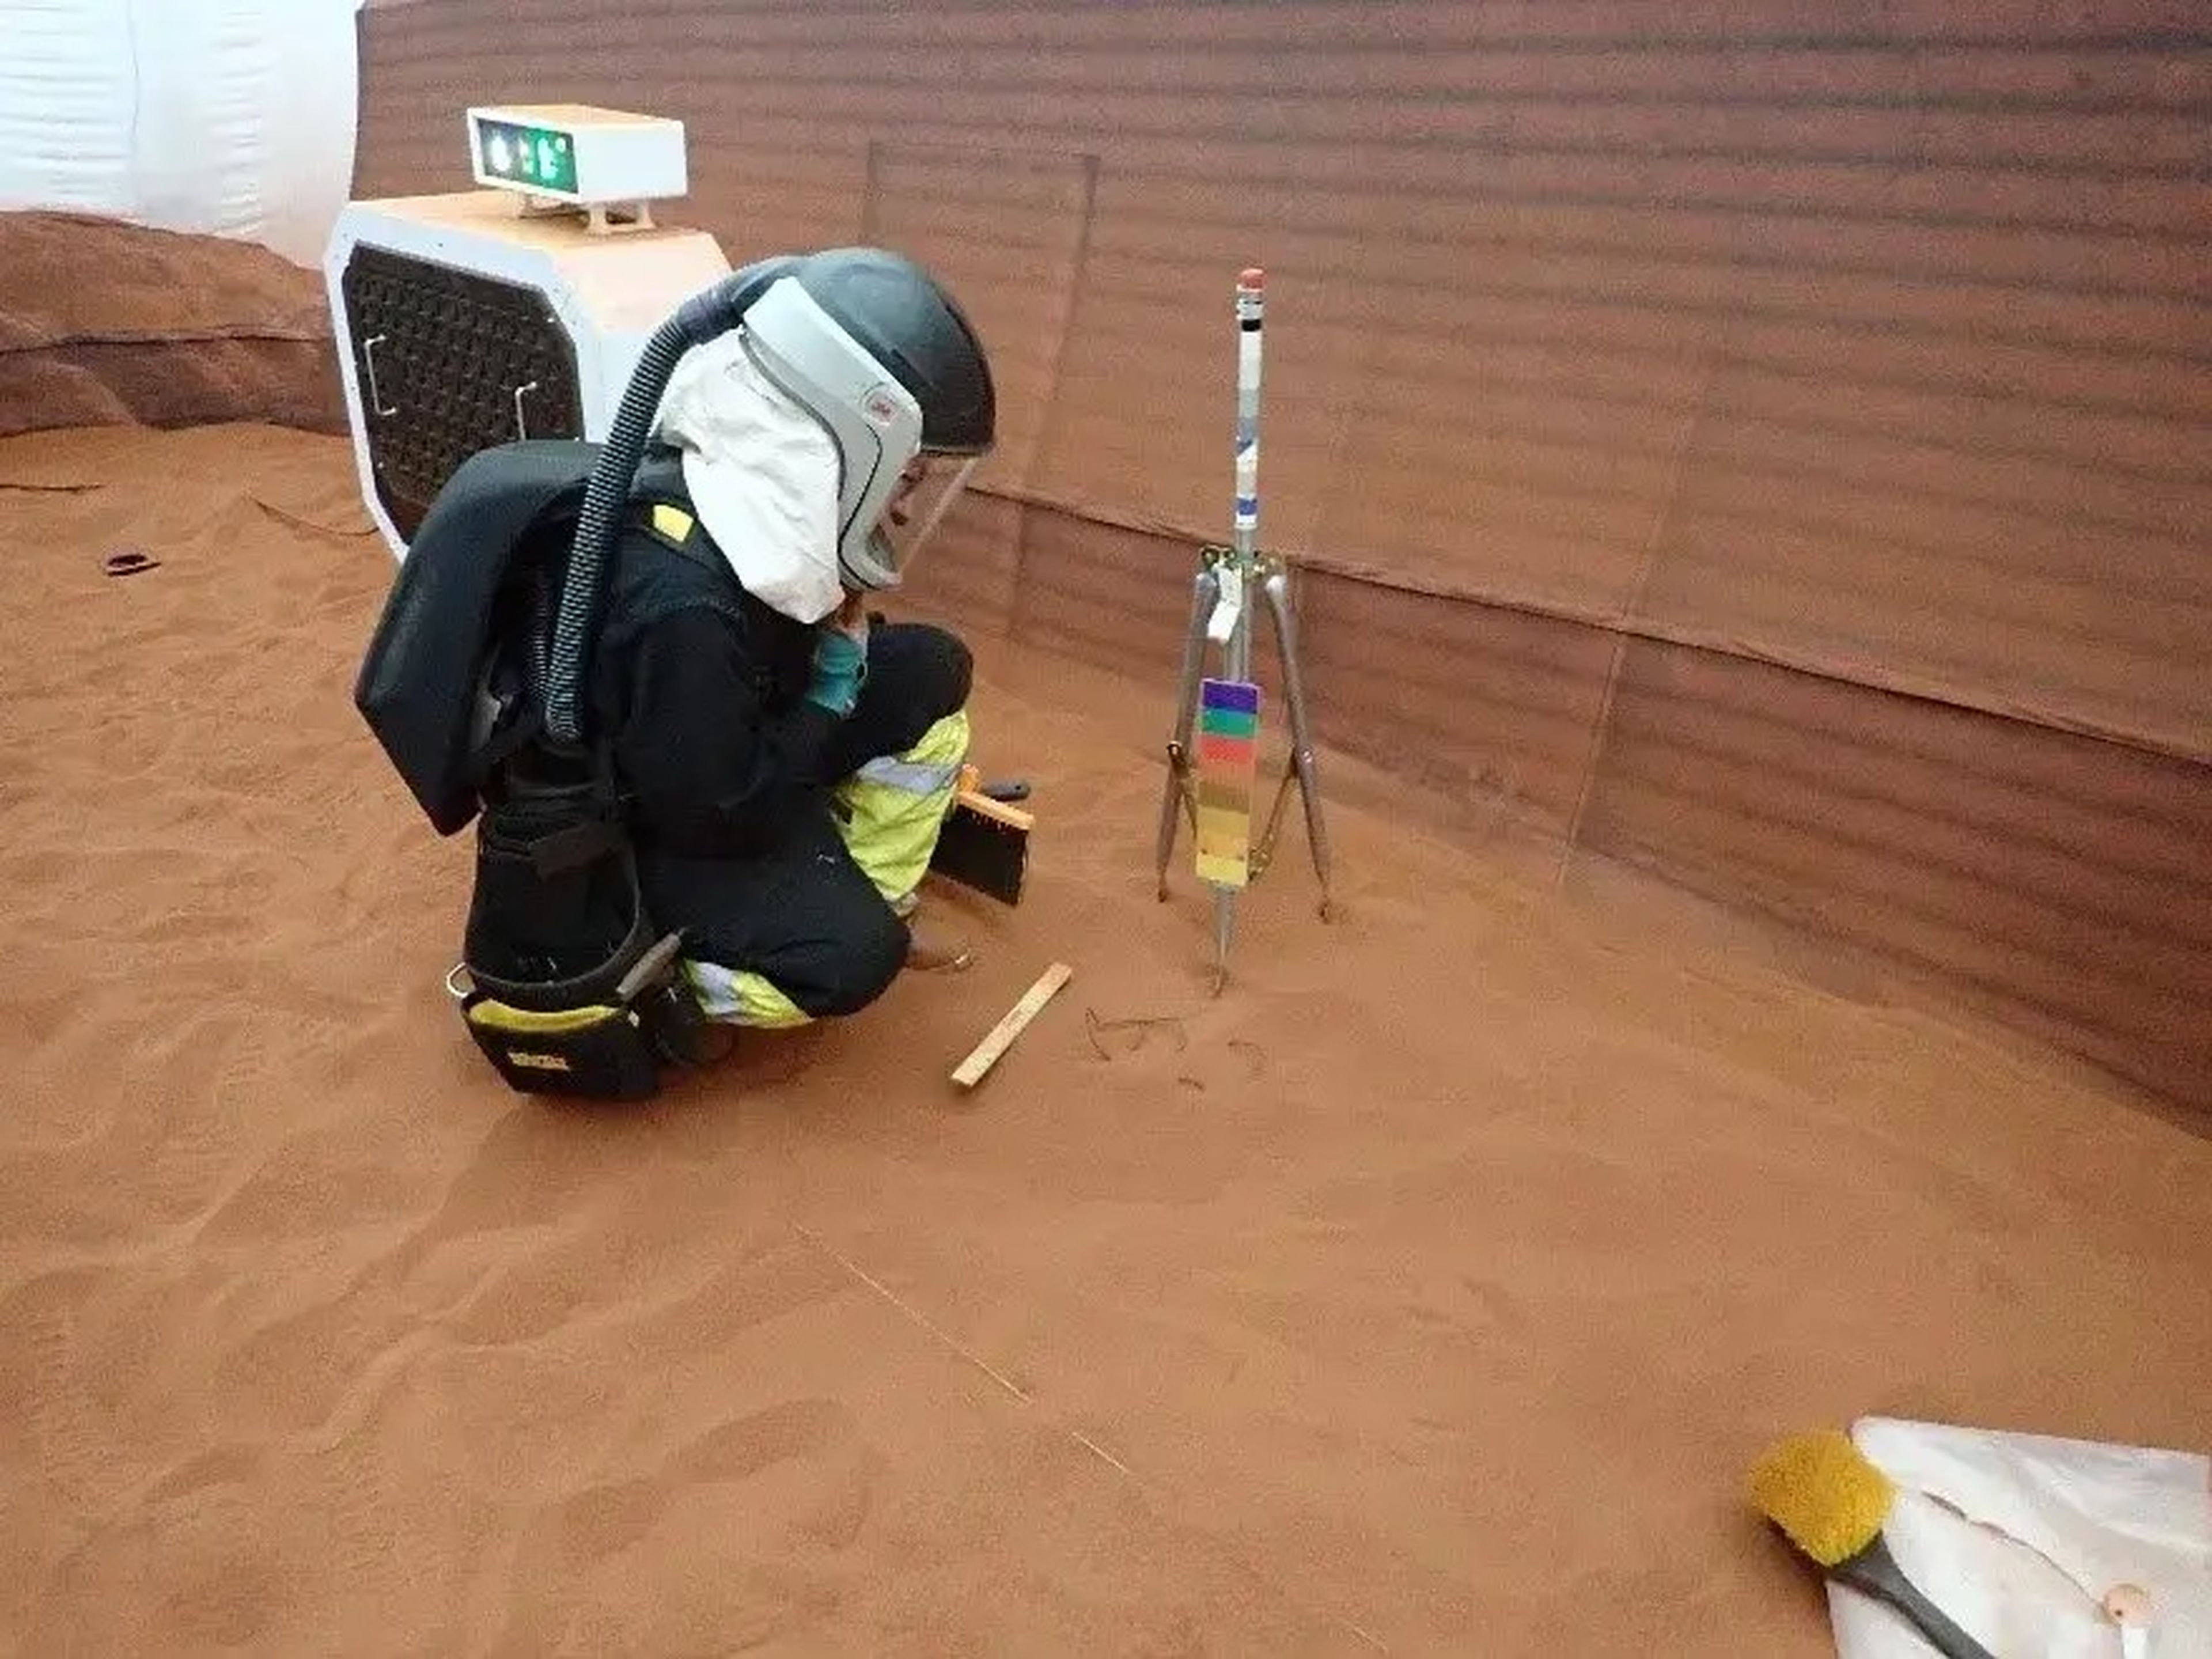 Un miembro de la tripulación de CHAPEA en un paseo simulado por un espacio que imita el hábitat marciano.